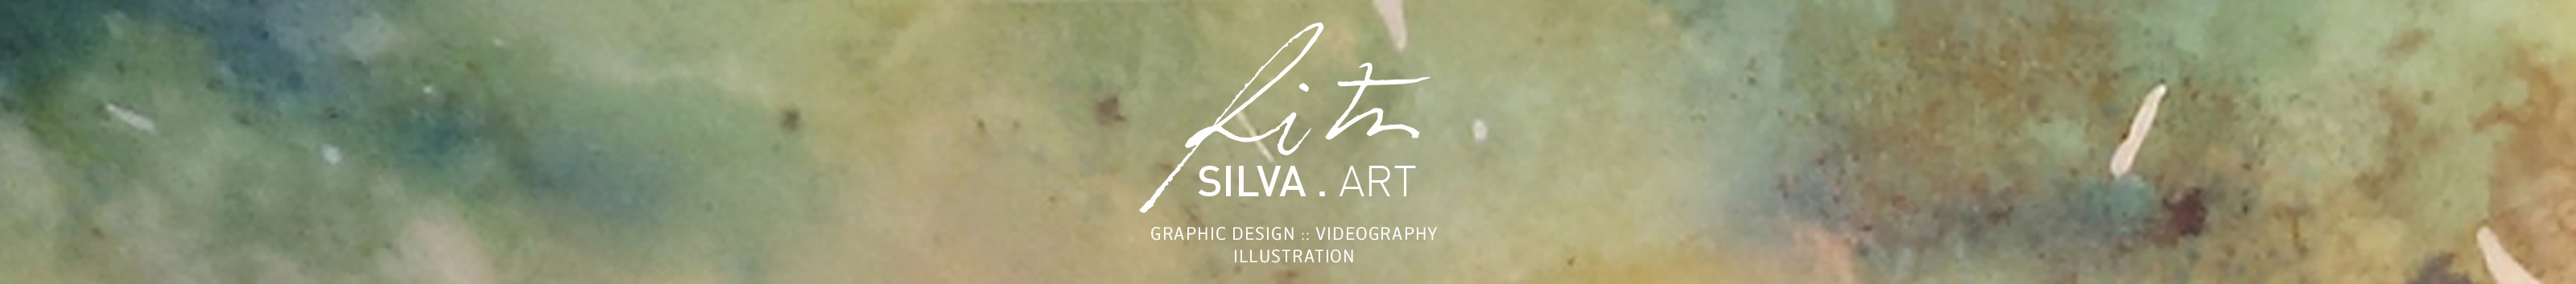 Rita Silva's profile banner